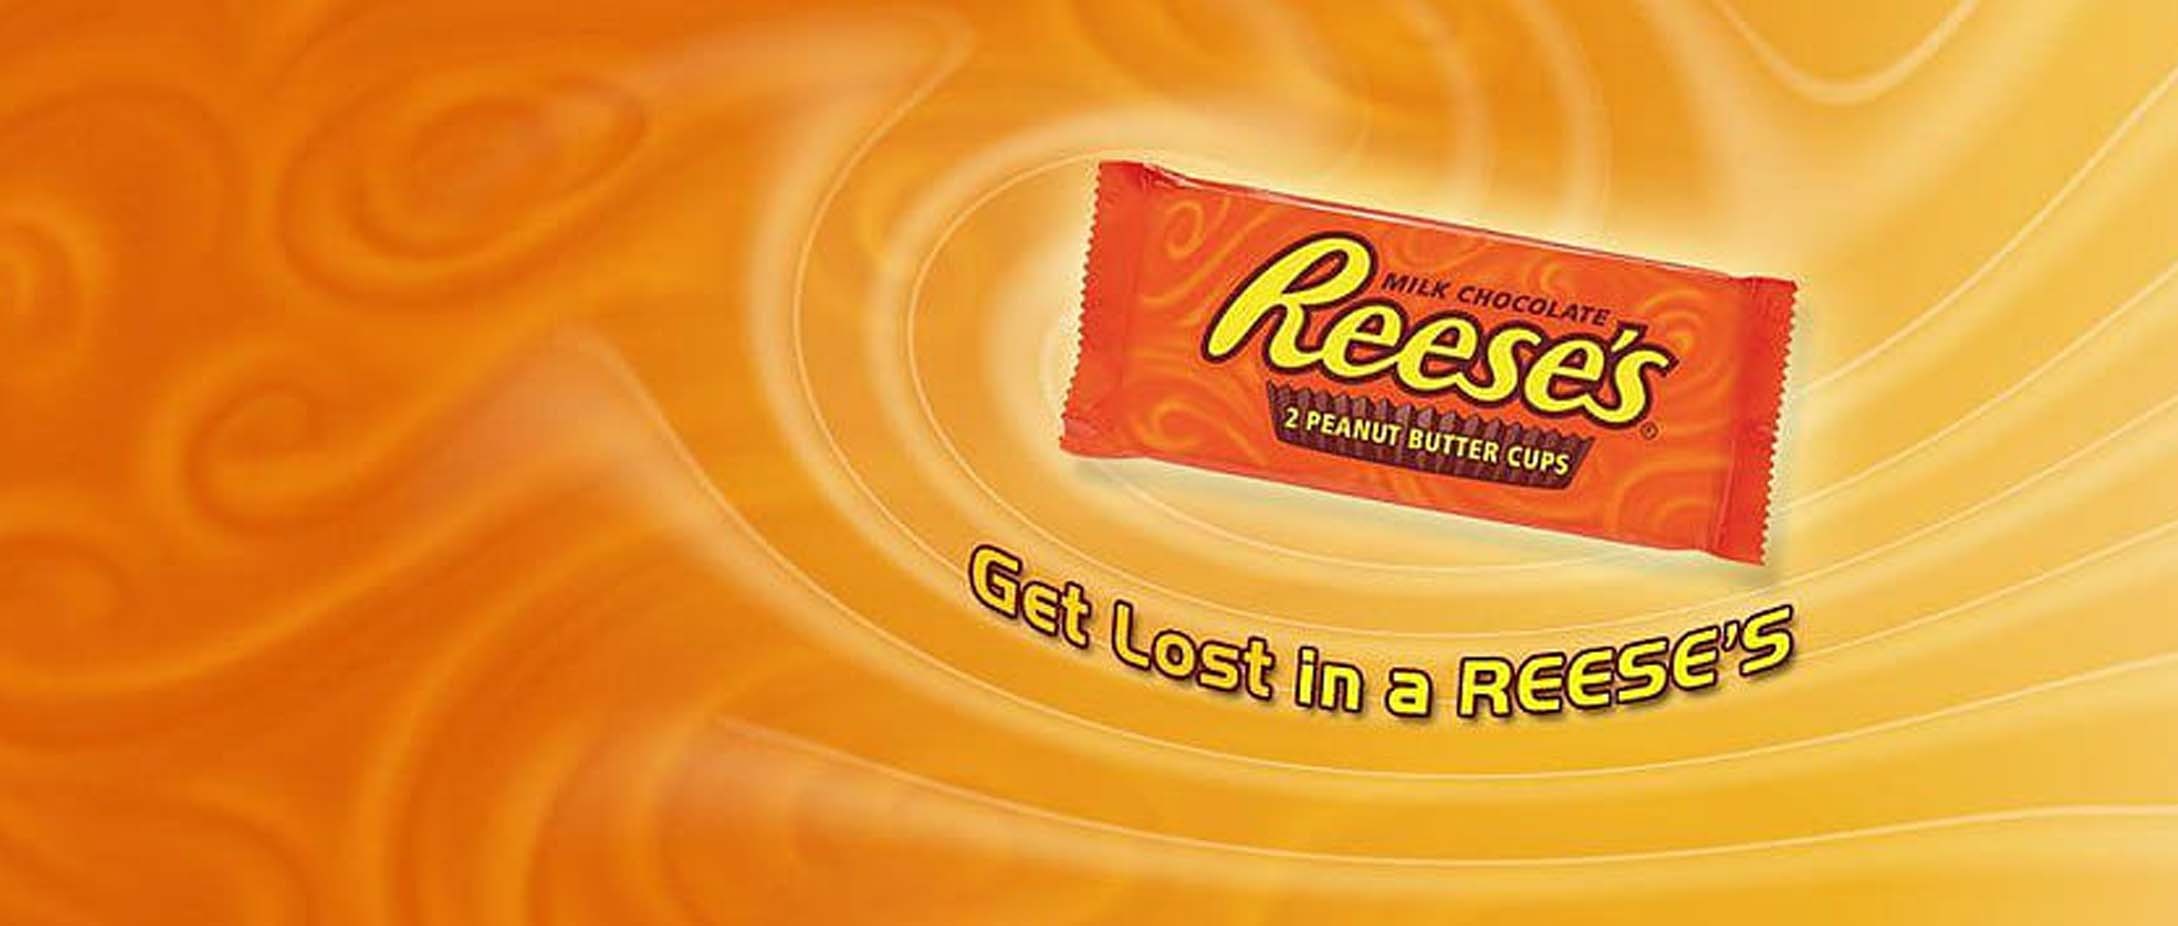 Reese's VS les autres marques de chocolat aux cacahuètes : le grand comparatif